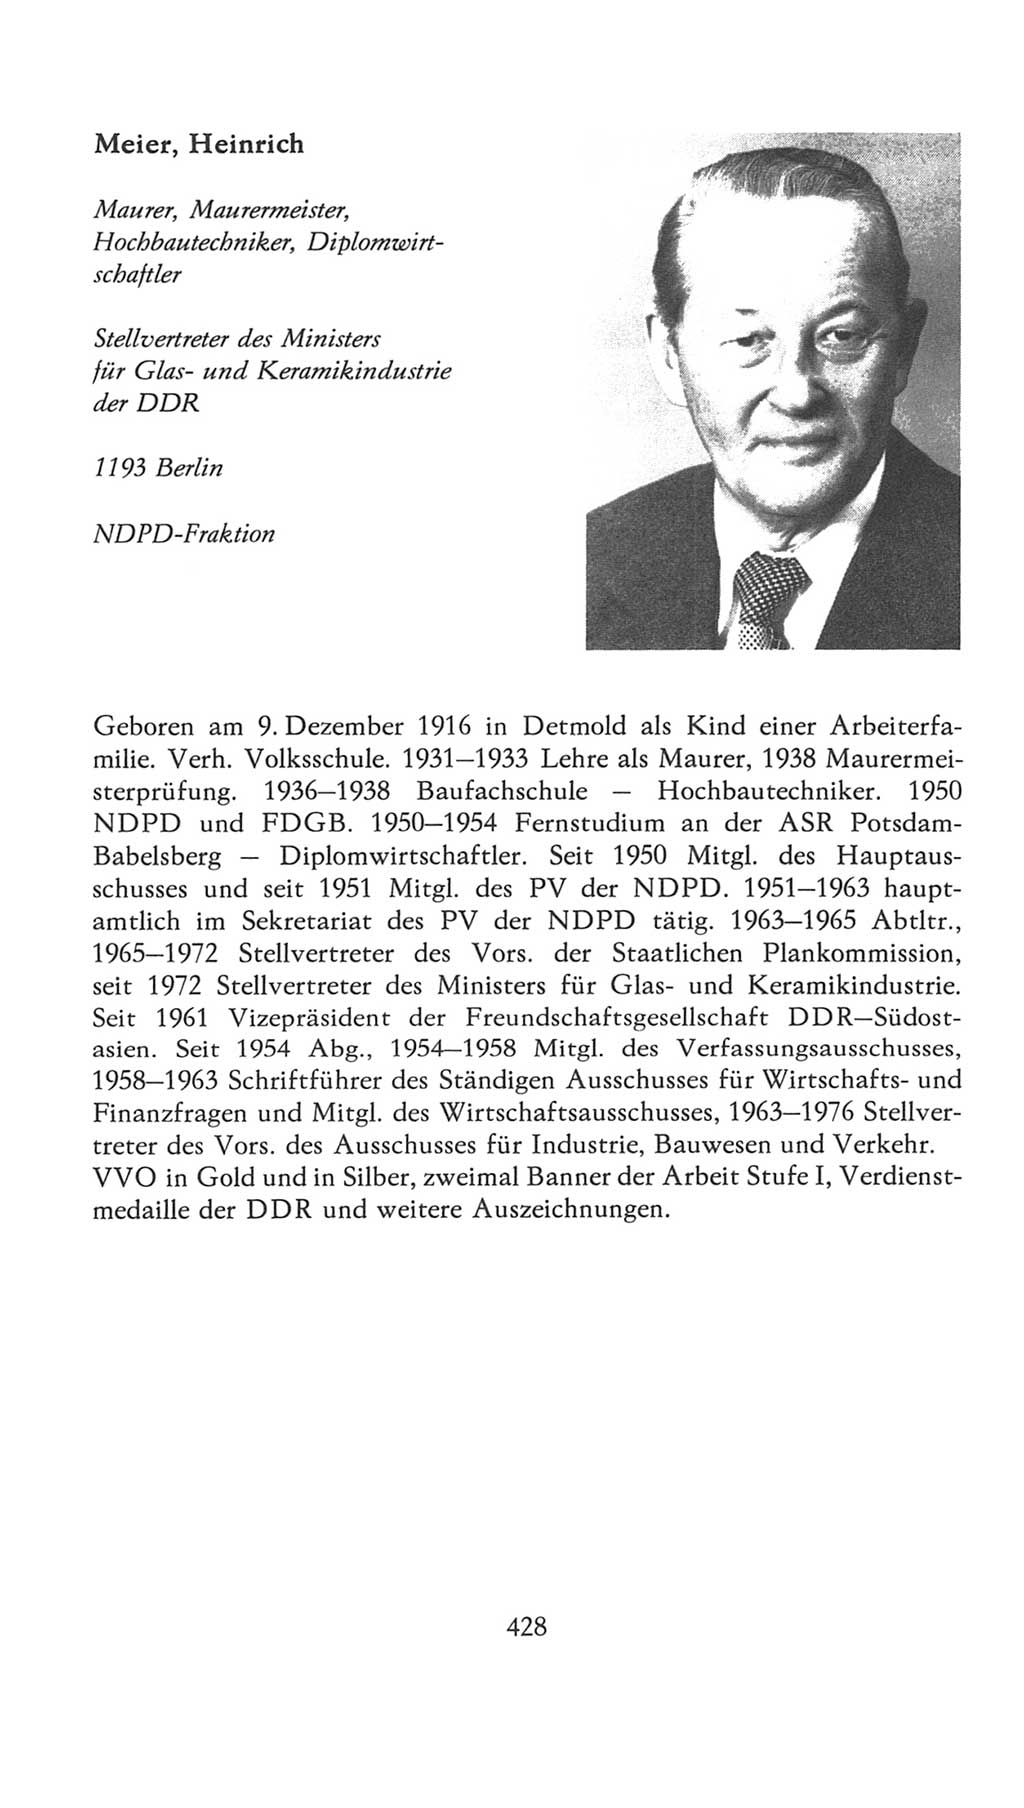 Volkskammer (VK) der Deutschen Demokratischen Republik (DDR), 7. Wahlperiode 1976-1981, Seite 428 (VK. DDR 7. WP. 1976-1981, S. 428)